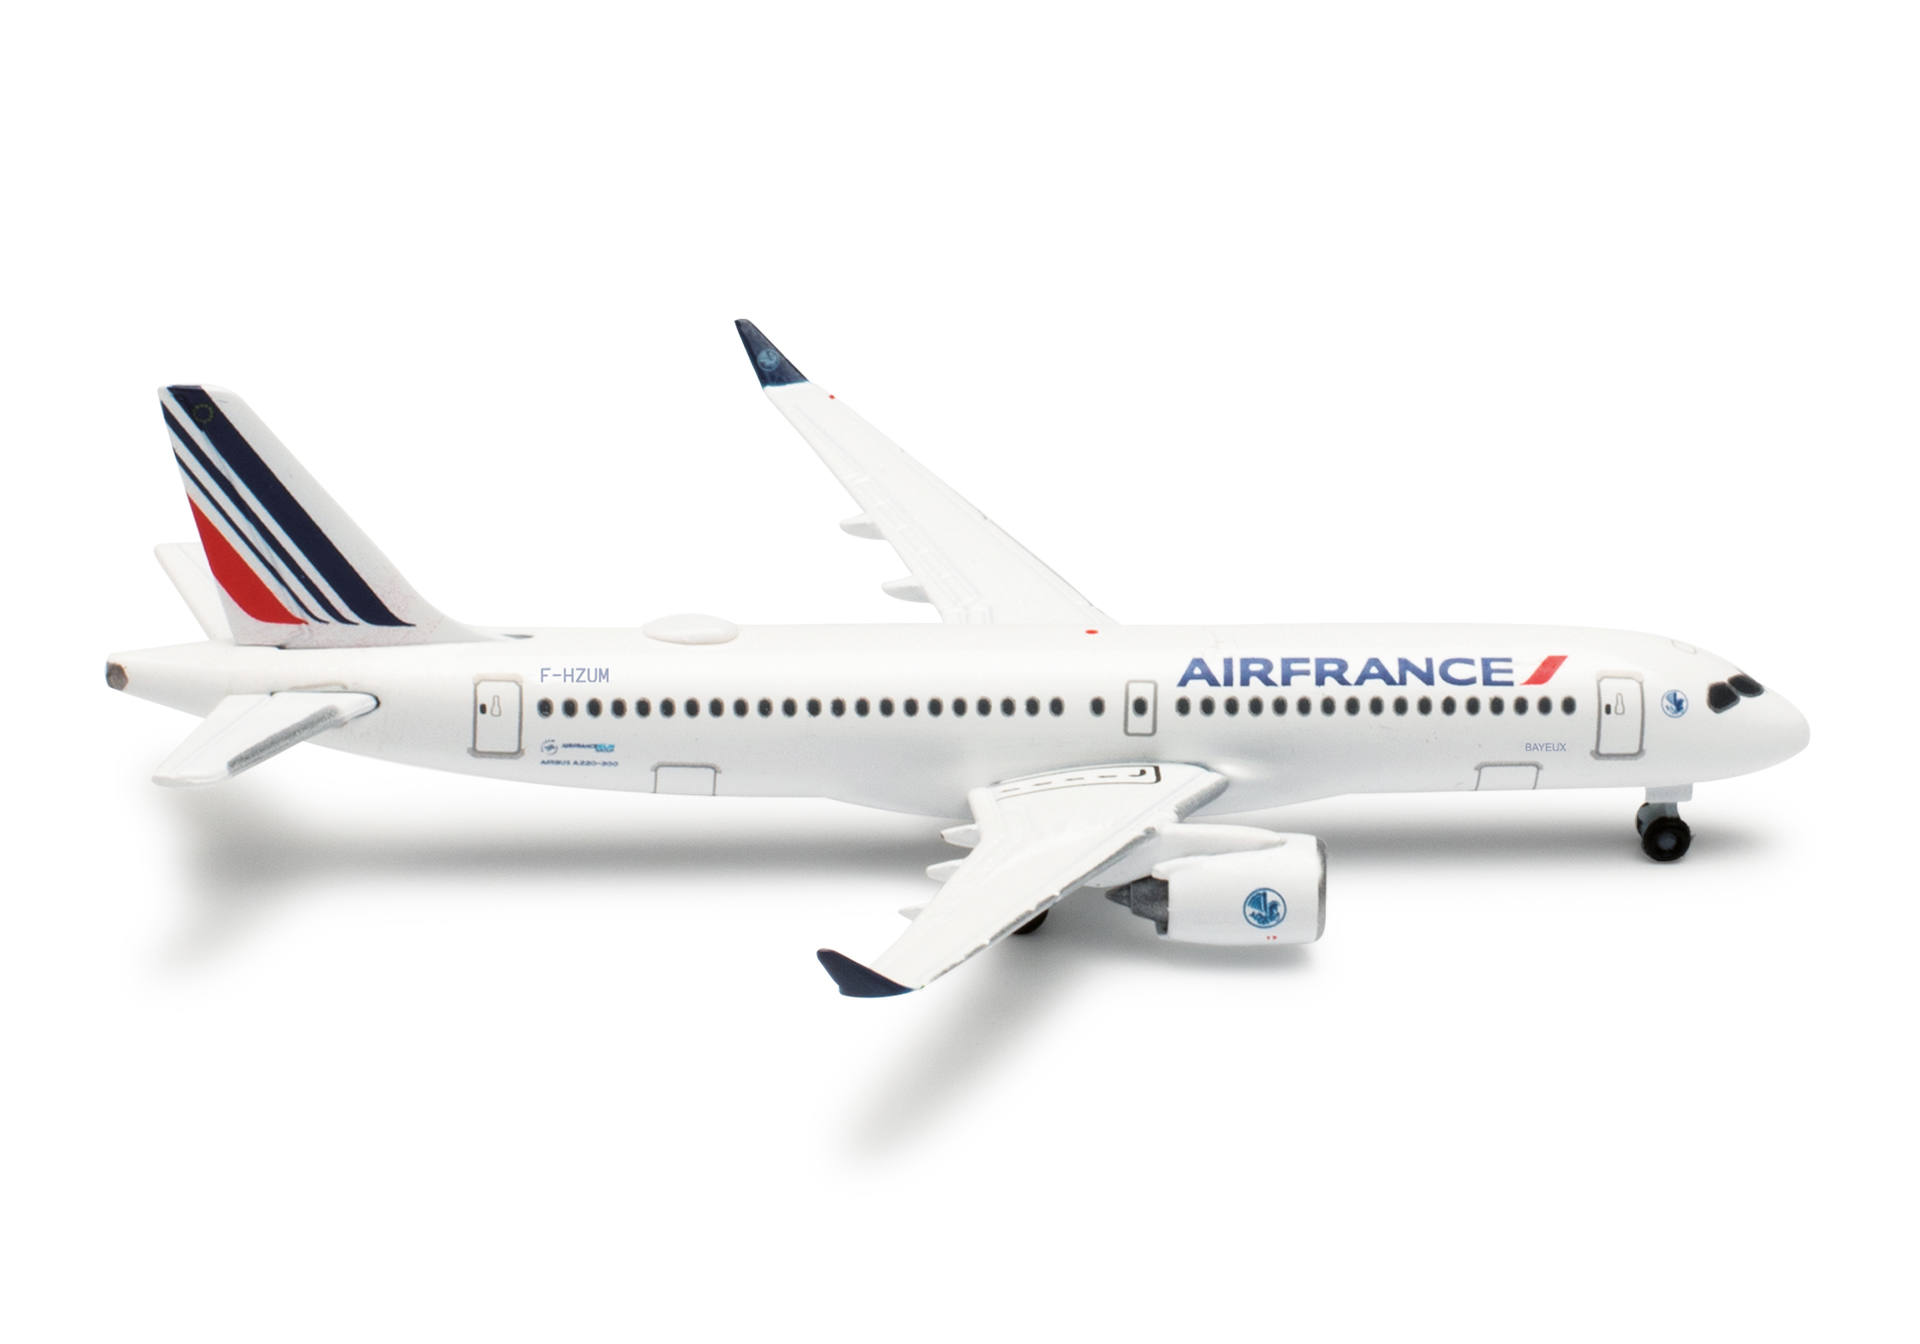 Air France Airbus A220-300 – F-HZUM “Bayeux”